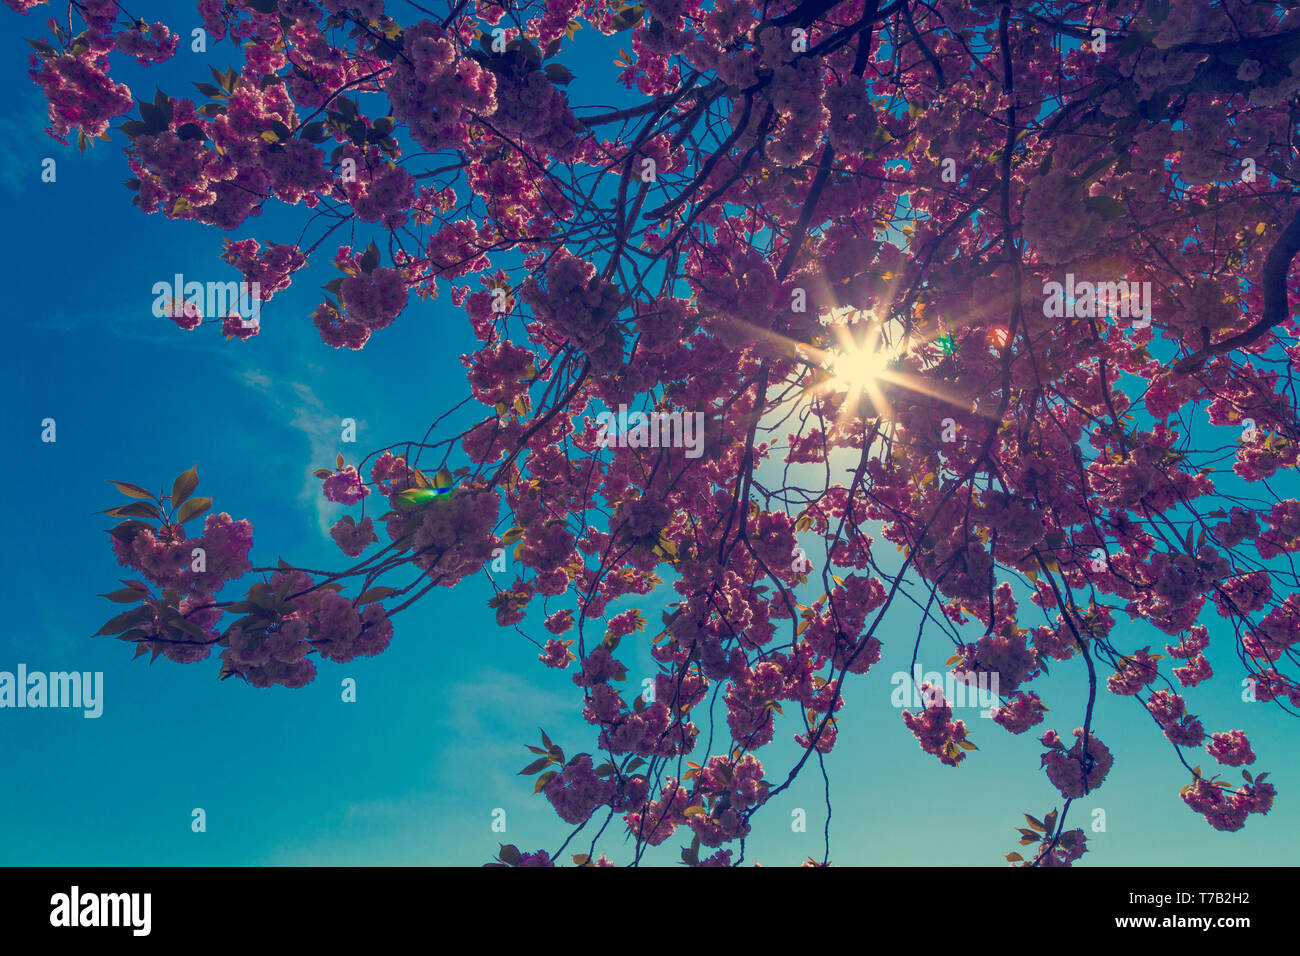 Nahaufnahme einer Kirschblüte Baum gegen den blauen Himmel Hintergrund Stockfoto